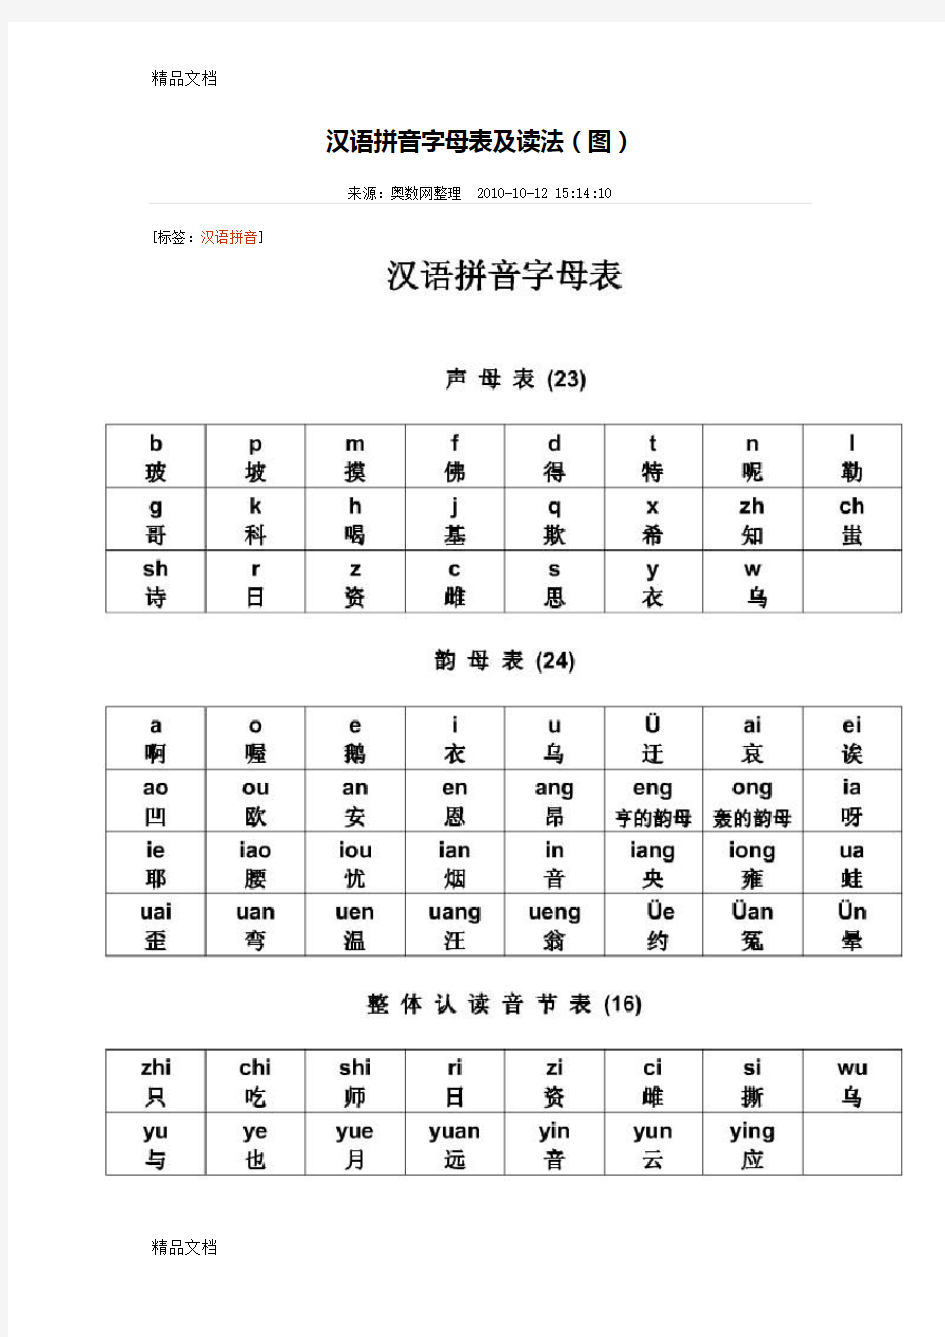 汉语拼音字母表及读法(图)学习资料